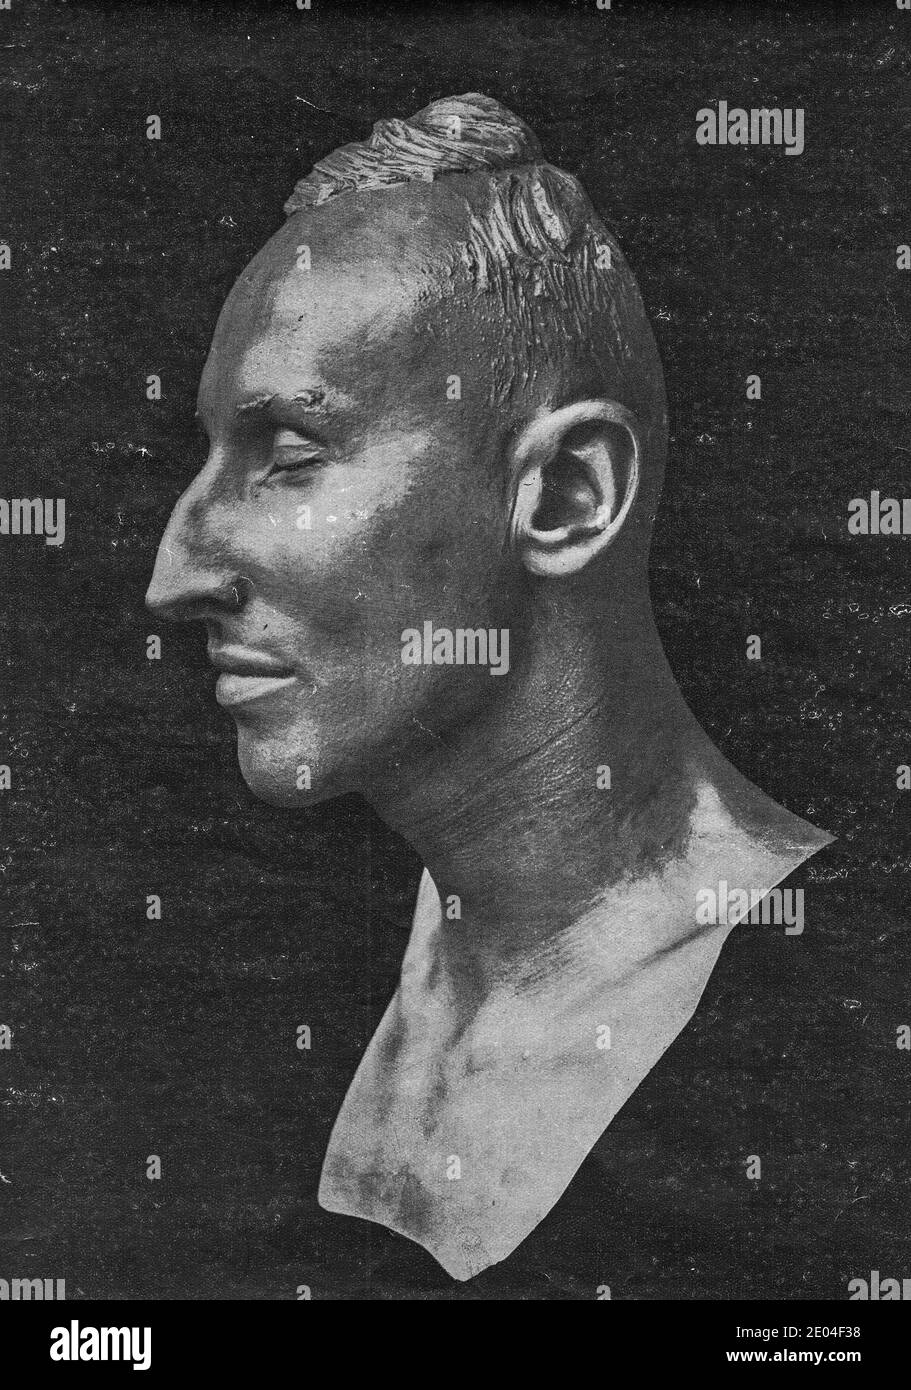 PRAGUE, PROTECTORAT DE LA BOHÊME ET DE LA MORAVIE - 1942: Masque de mort de Reinhard Heydrich, réalisé par le professeur Franz Rotter (sculpteur). Banque D'Images